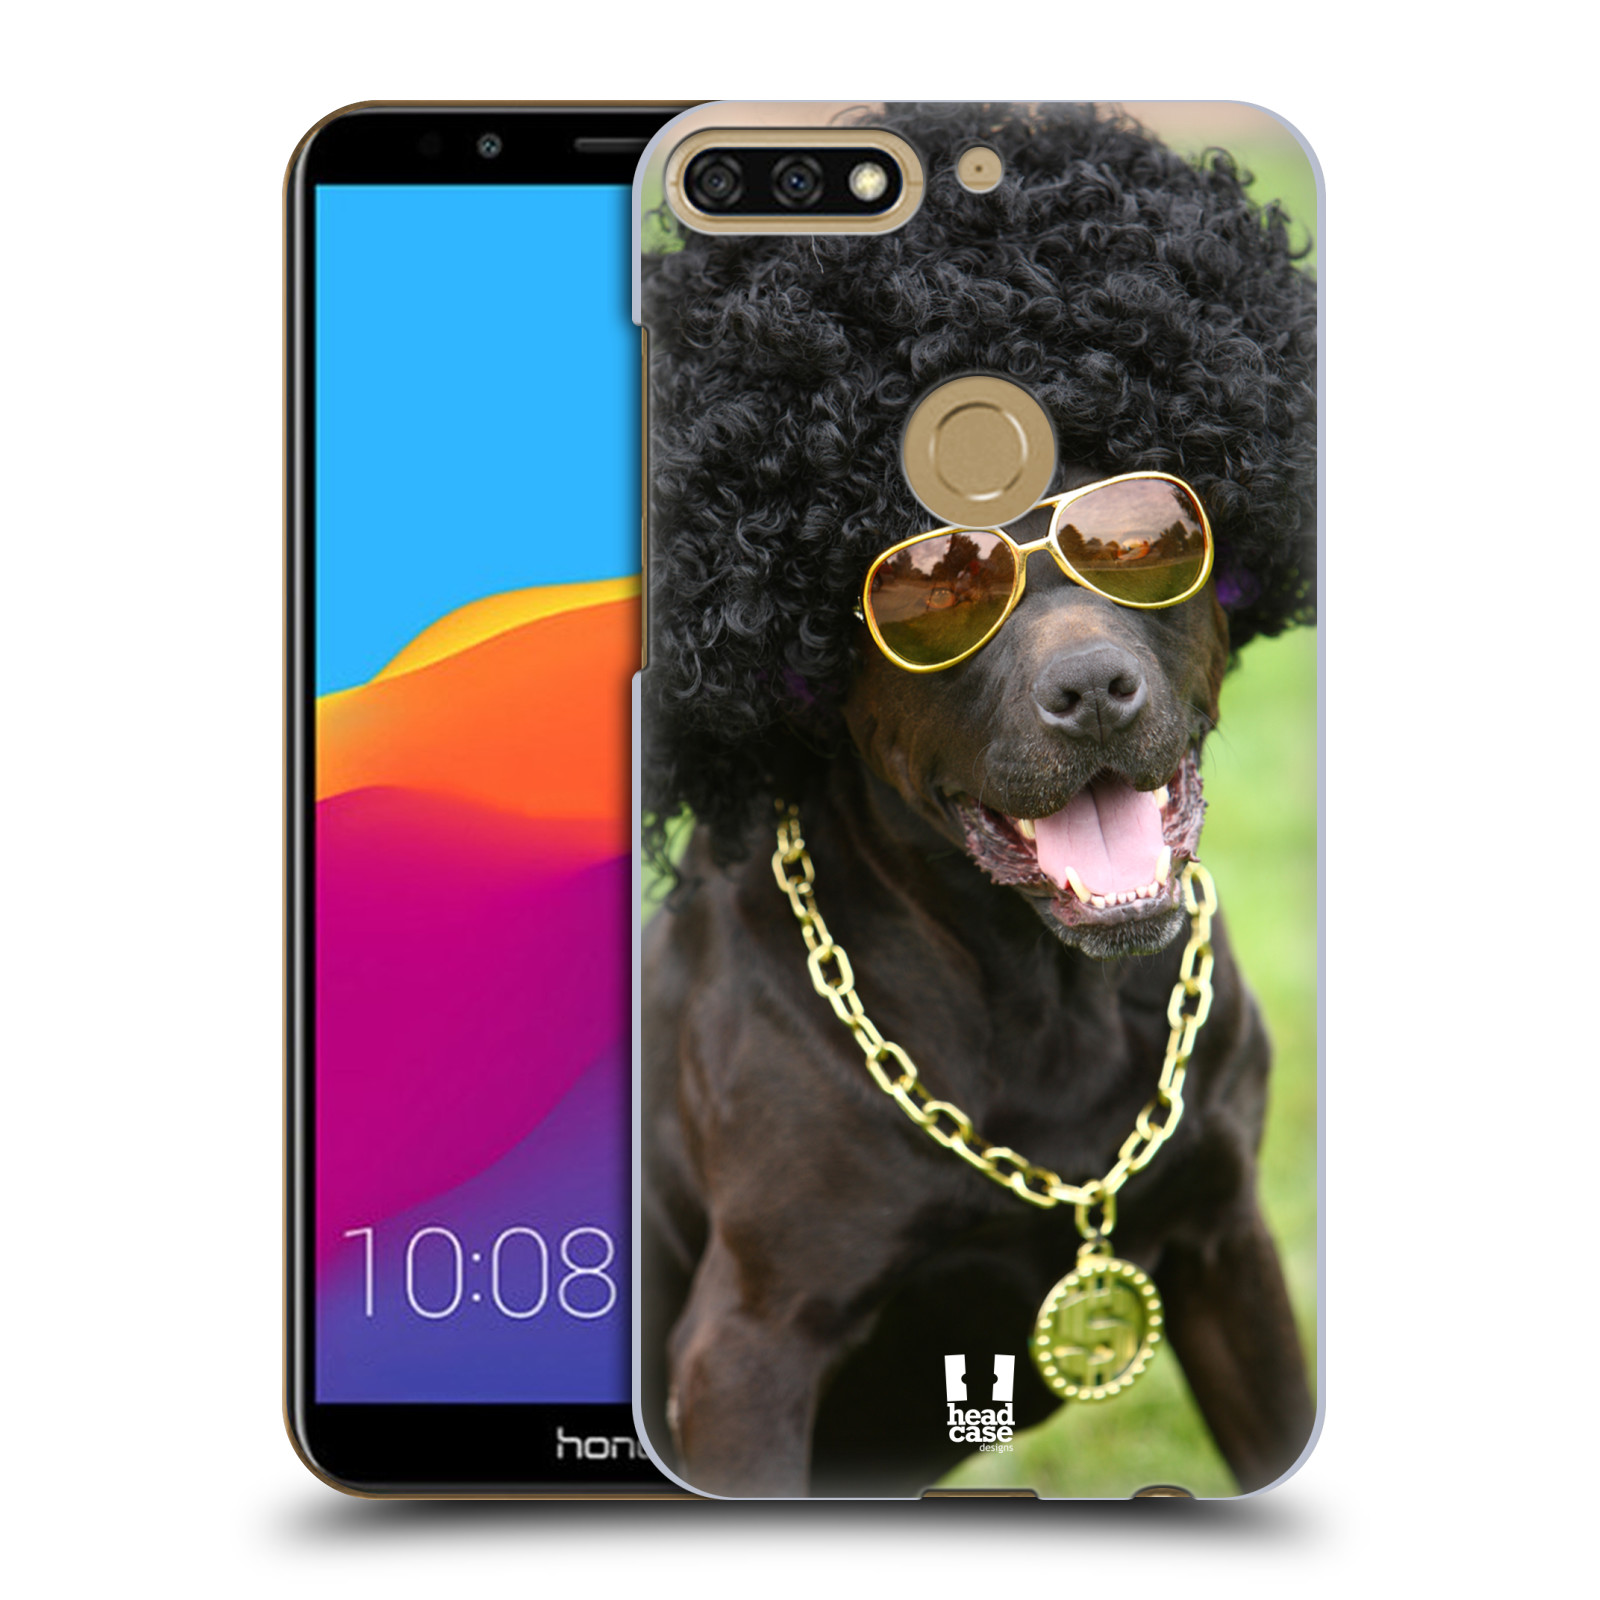 HEAD CASE plastový obal na mobil Honor 7c vzor Legrační zvířátka pejsek boháč